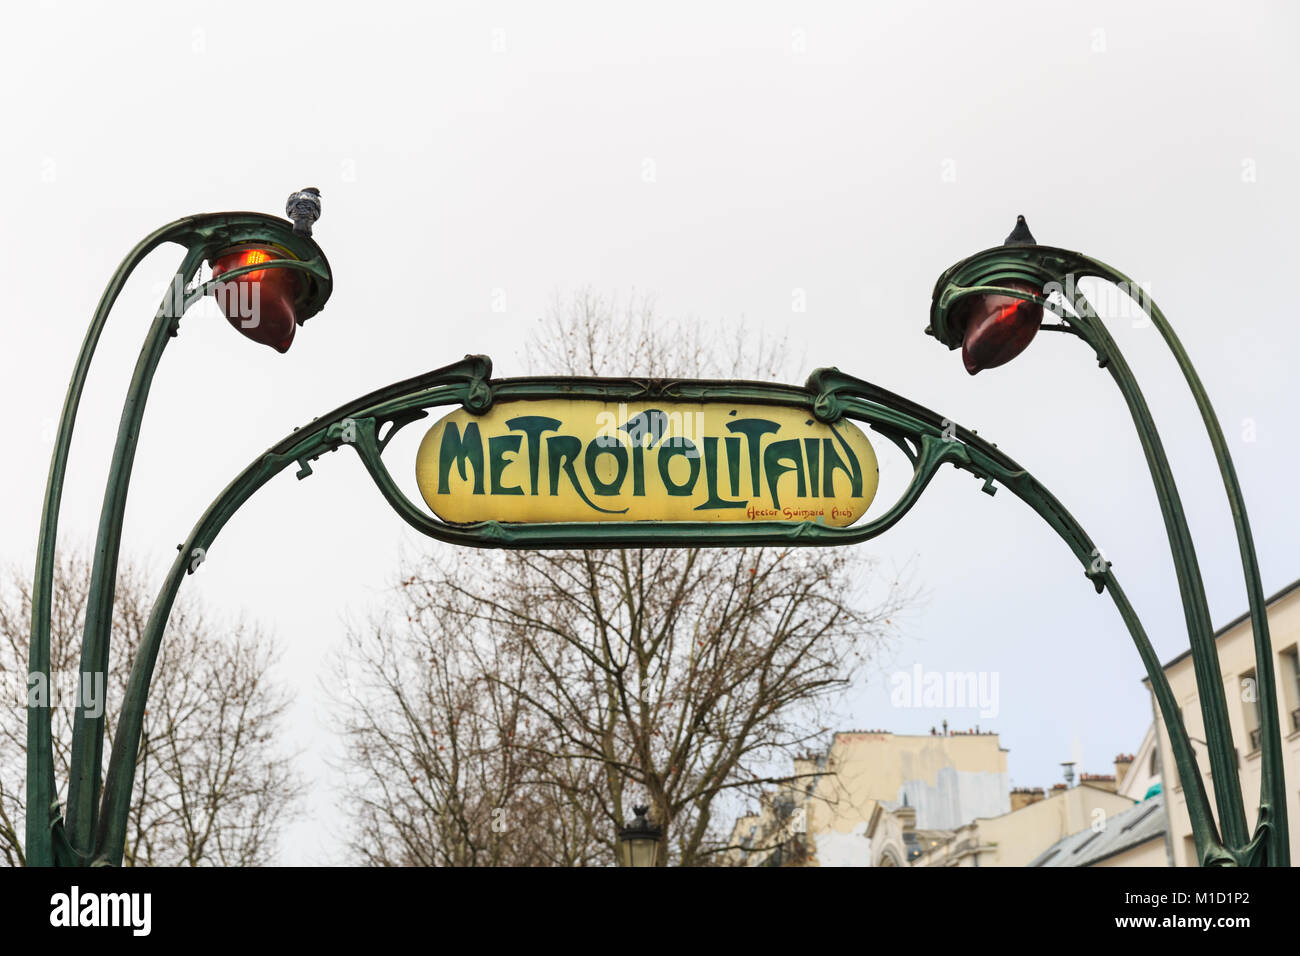 Paris Métro ou métro signer et entrée à Anvers, qui a eu lieu entre deux lampadaires ornés, en français l'architecture Art Nouveau, Paris, France Banque D'Images